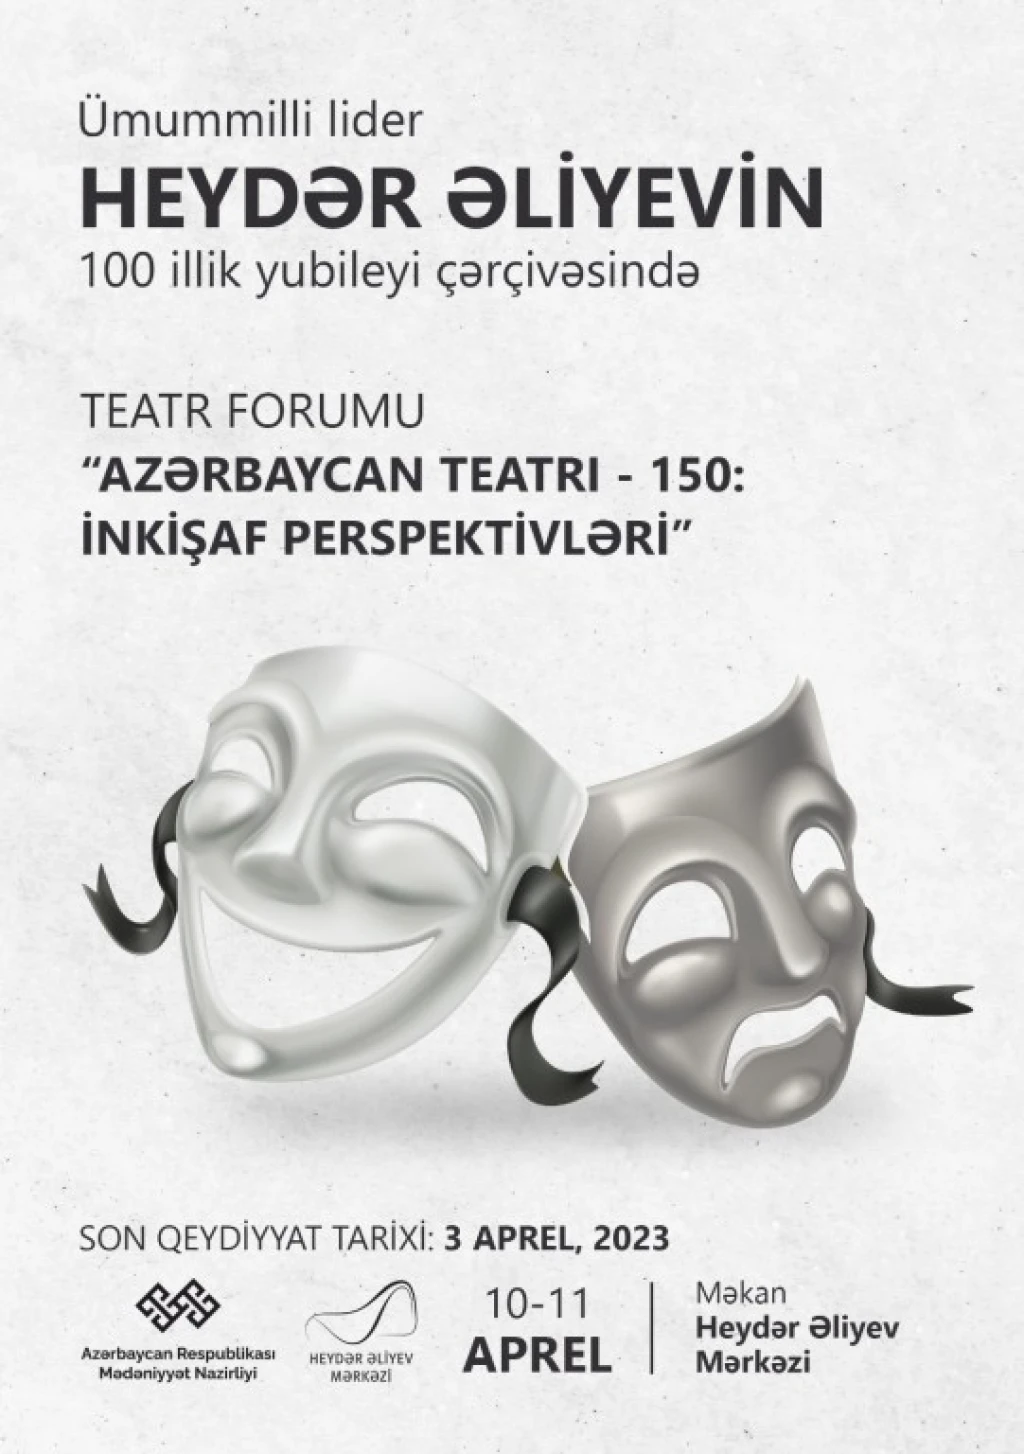 azerbaycan-teatri--150-inkisaf-perspektivleri-movzusunda-teatr-forumu-kecirilecek--